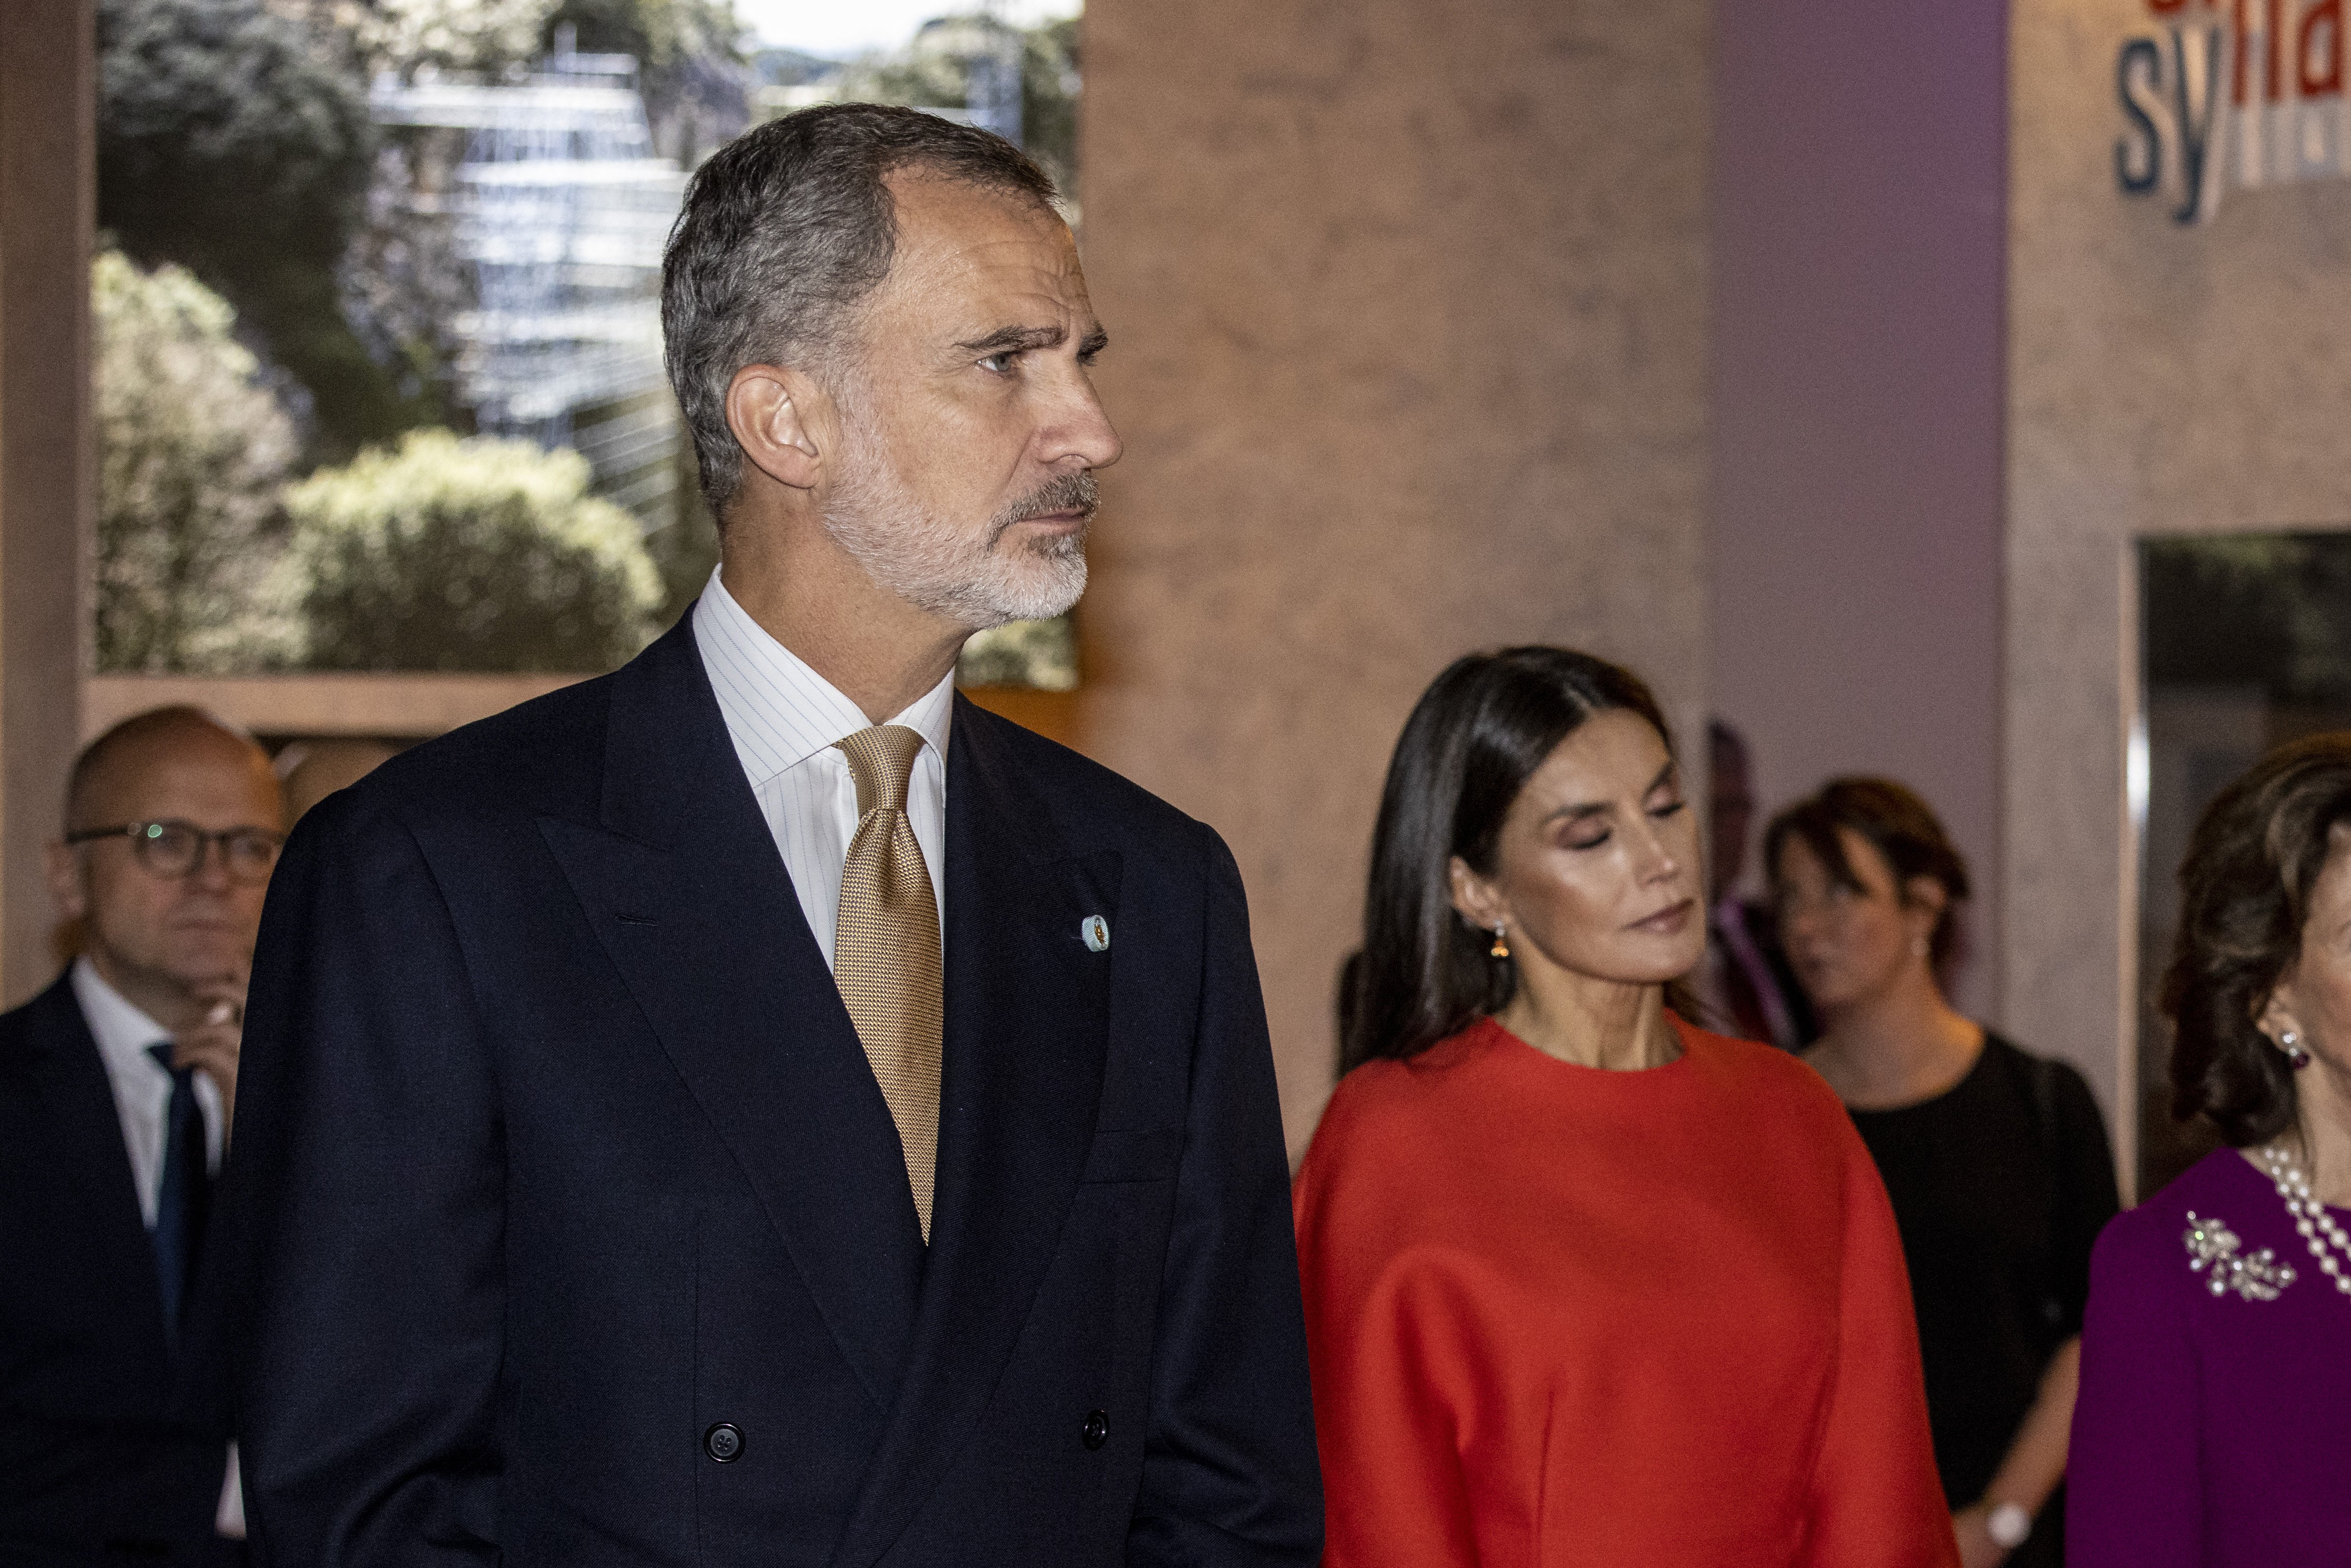 Le roi Felipe VI et la reine Letizia d'Espagne visitent le musée Nobel et l'exposition spéciale sur Santiago Ramon y Cajal le 24 novembre 2021 à Stockholm, en Suède. / Source : Getty Images